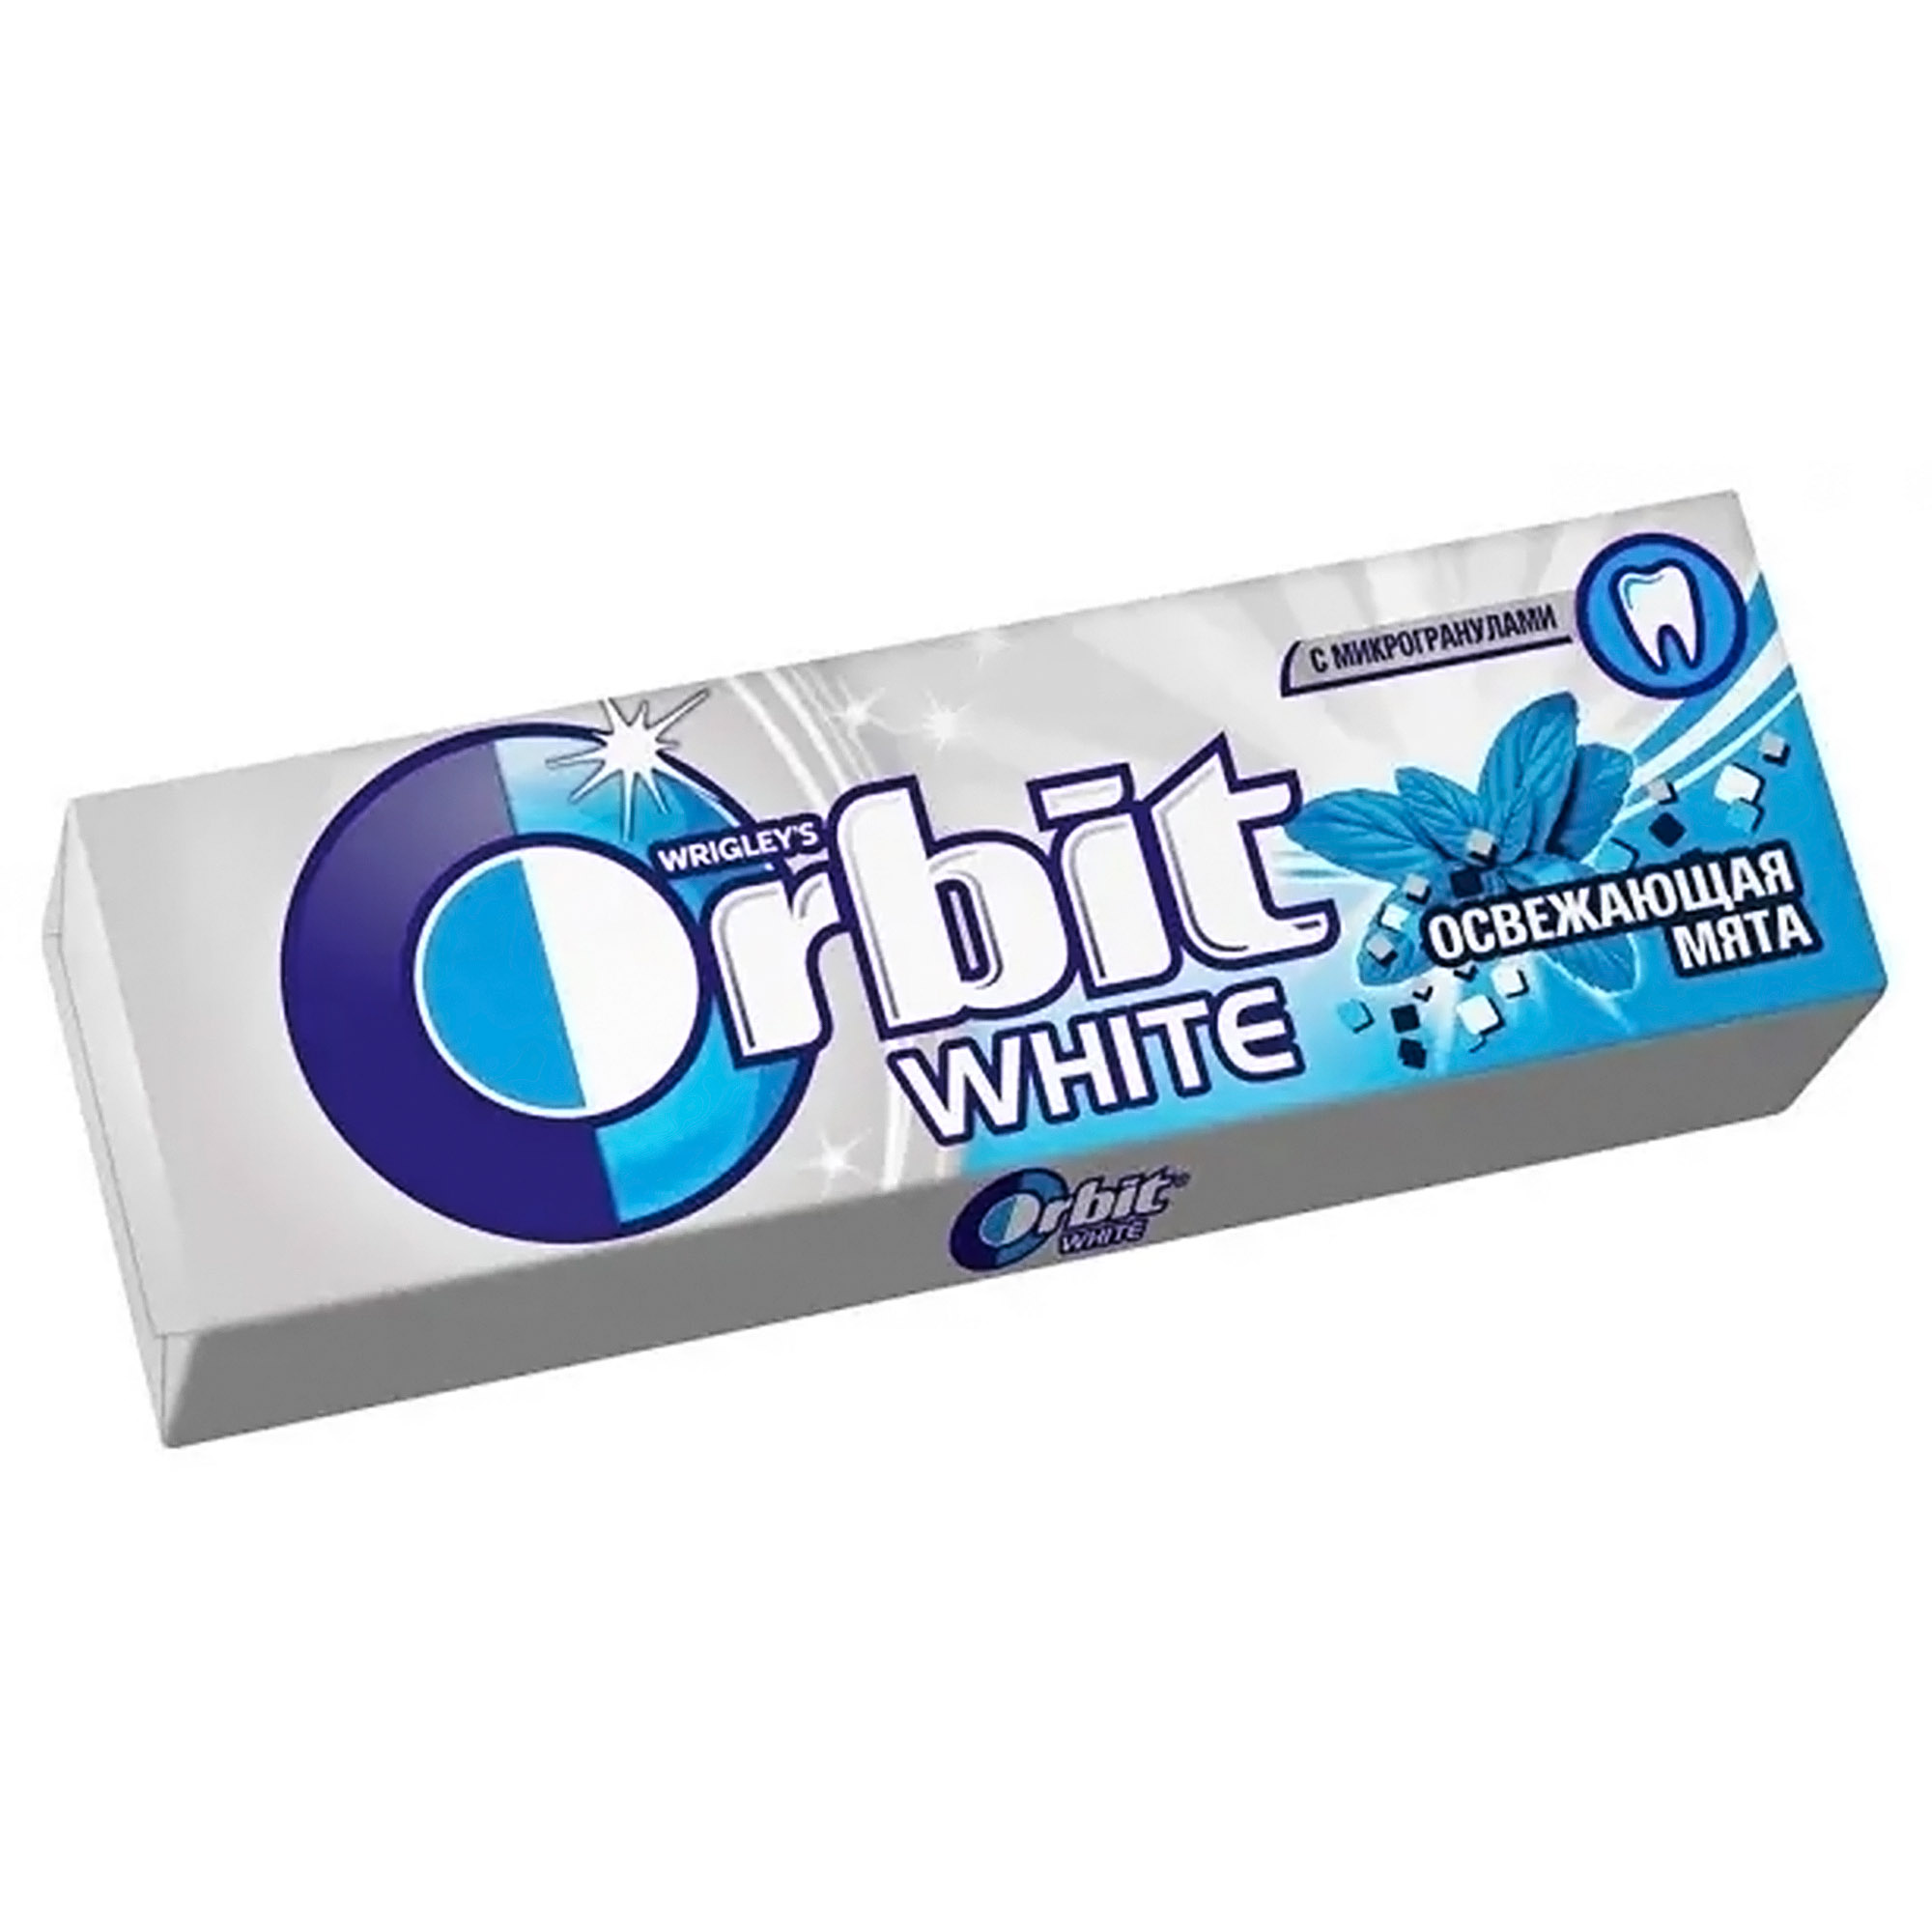 Жевательная резинка Orbit White Освежающая мята, 13,6 г подсластитель maitre 650 таблеток